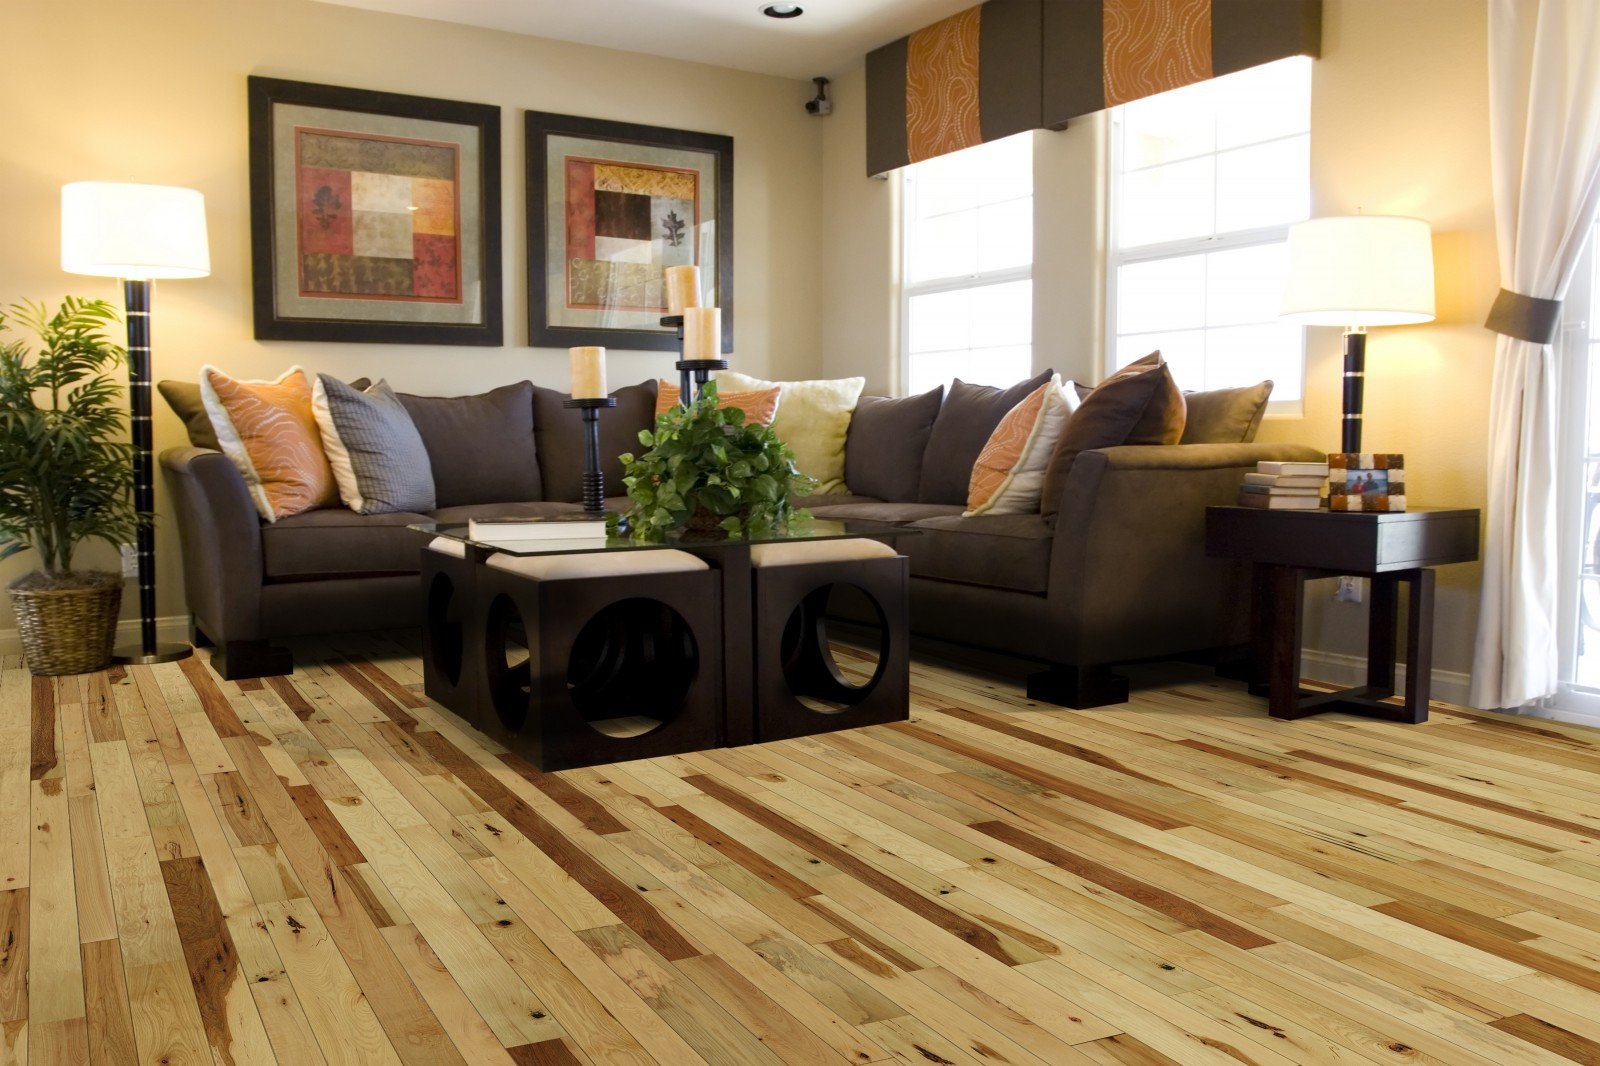 Comfortable Living Room Hickory Floor Floor Hickory Hardwood Flooring In the Living Room with